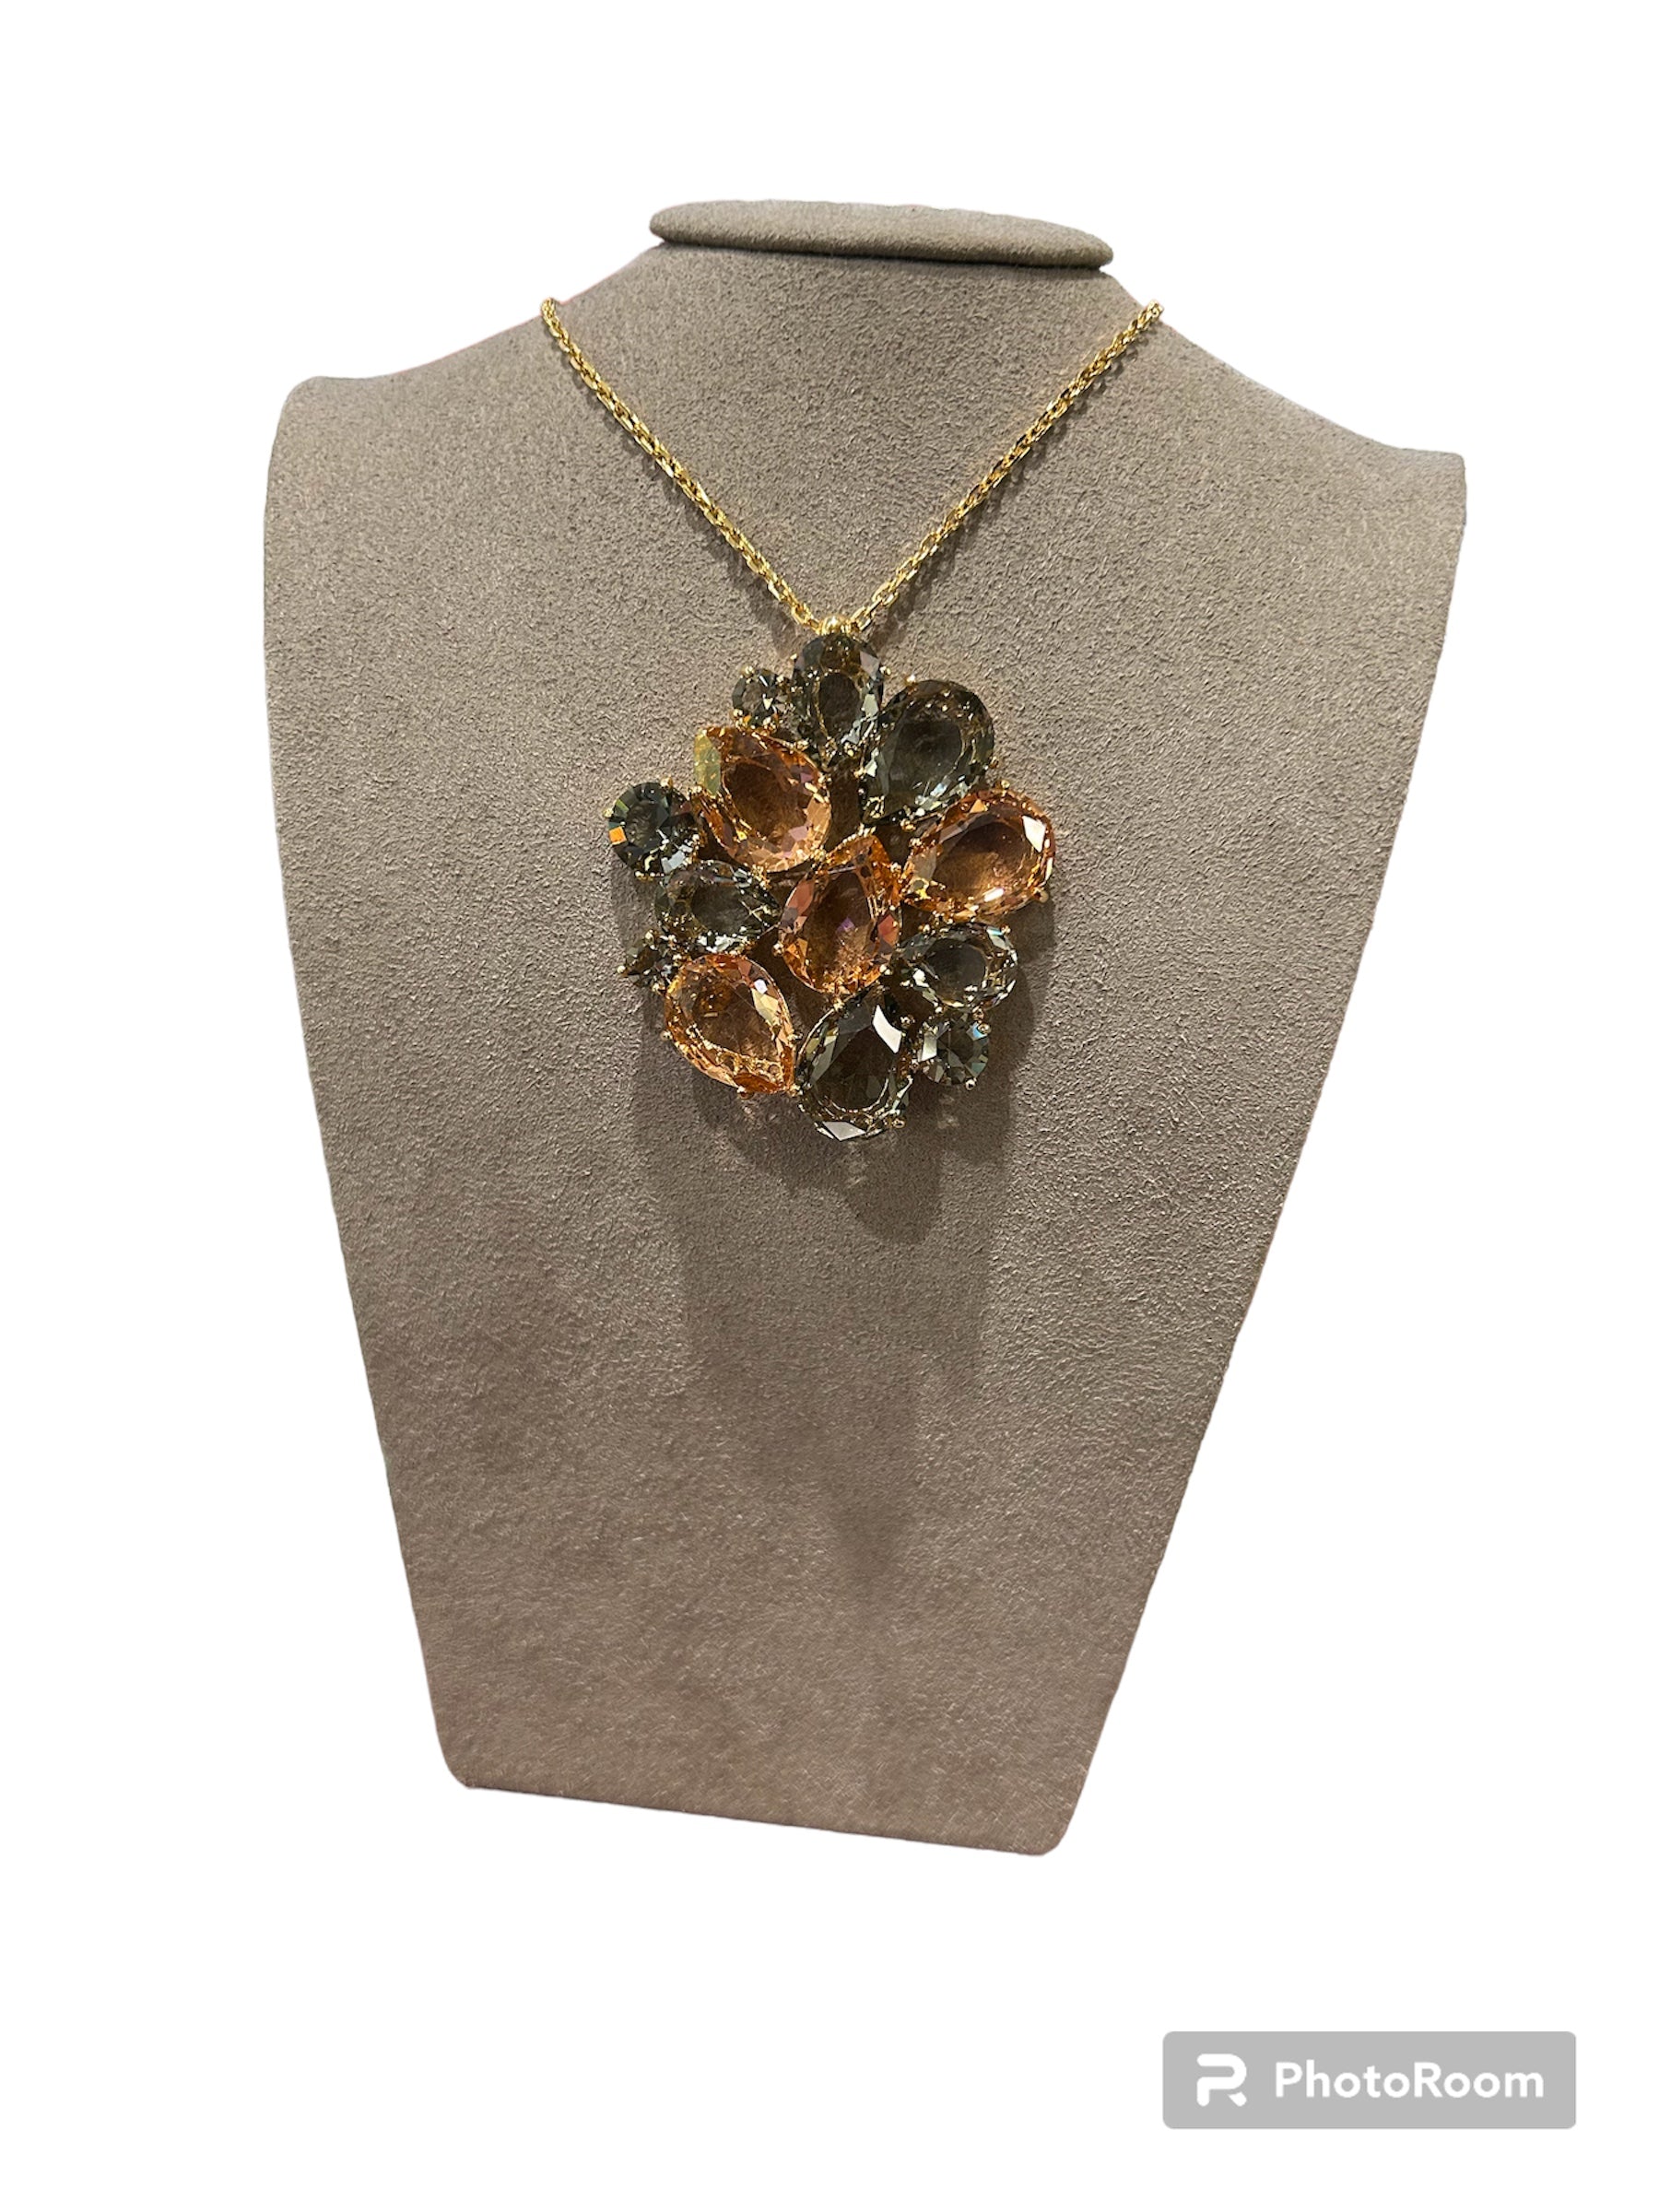 IL Mio Re - Long collier en bronze doré avec pendentif médaillon avec pierres de couleur fumée - ILMIORE CL 059 FUME'